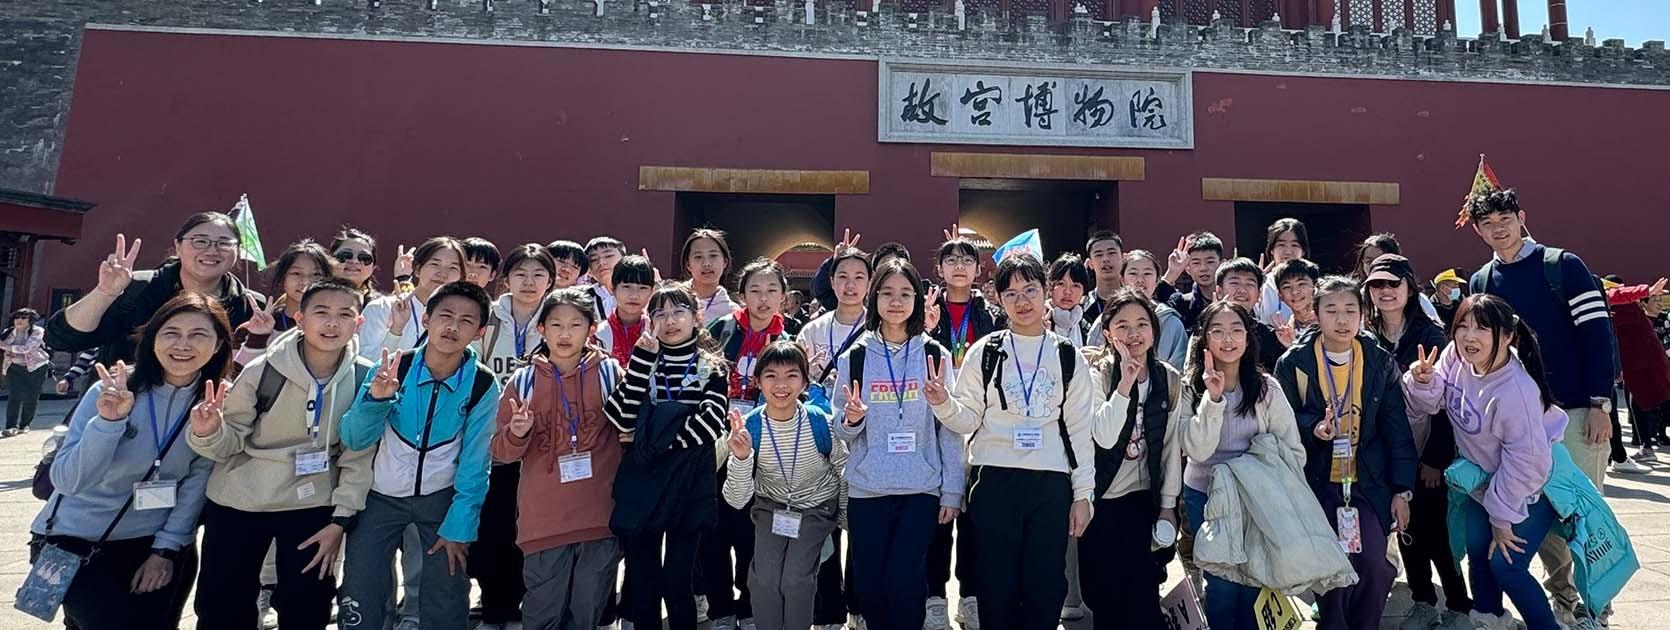 69 北京傳統文化及學術交流之旅